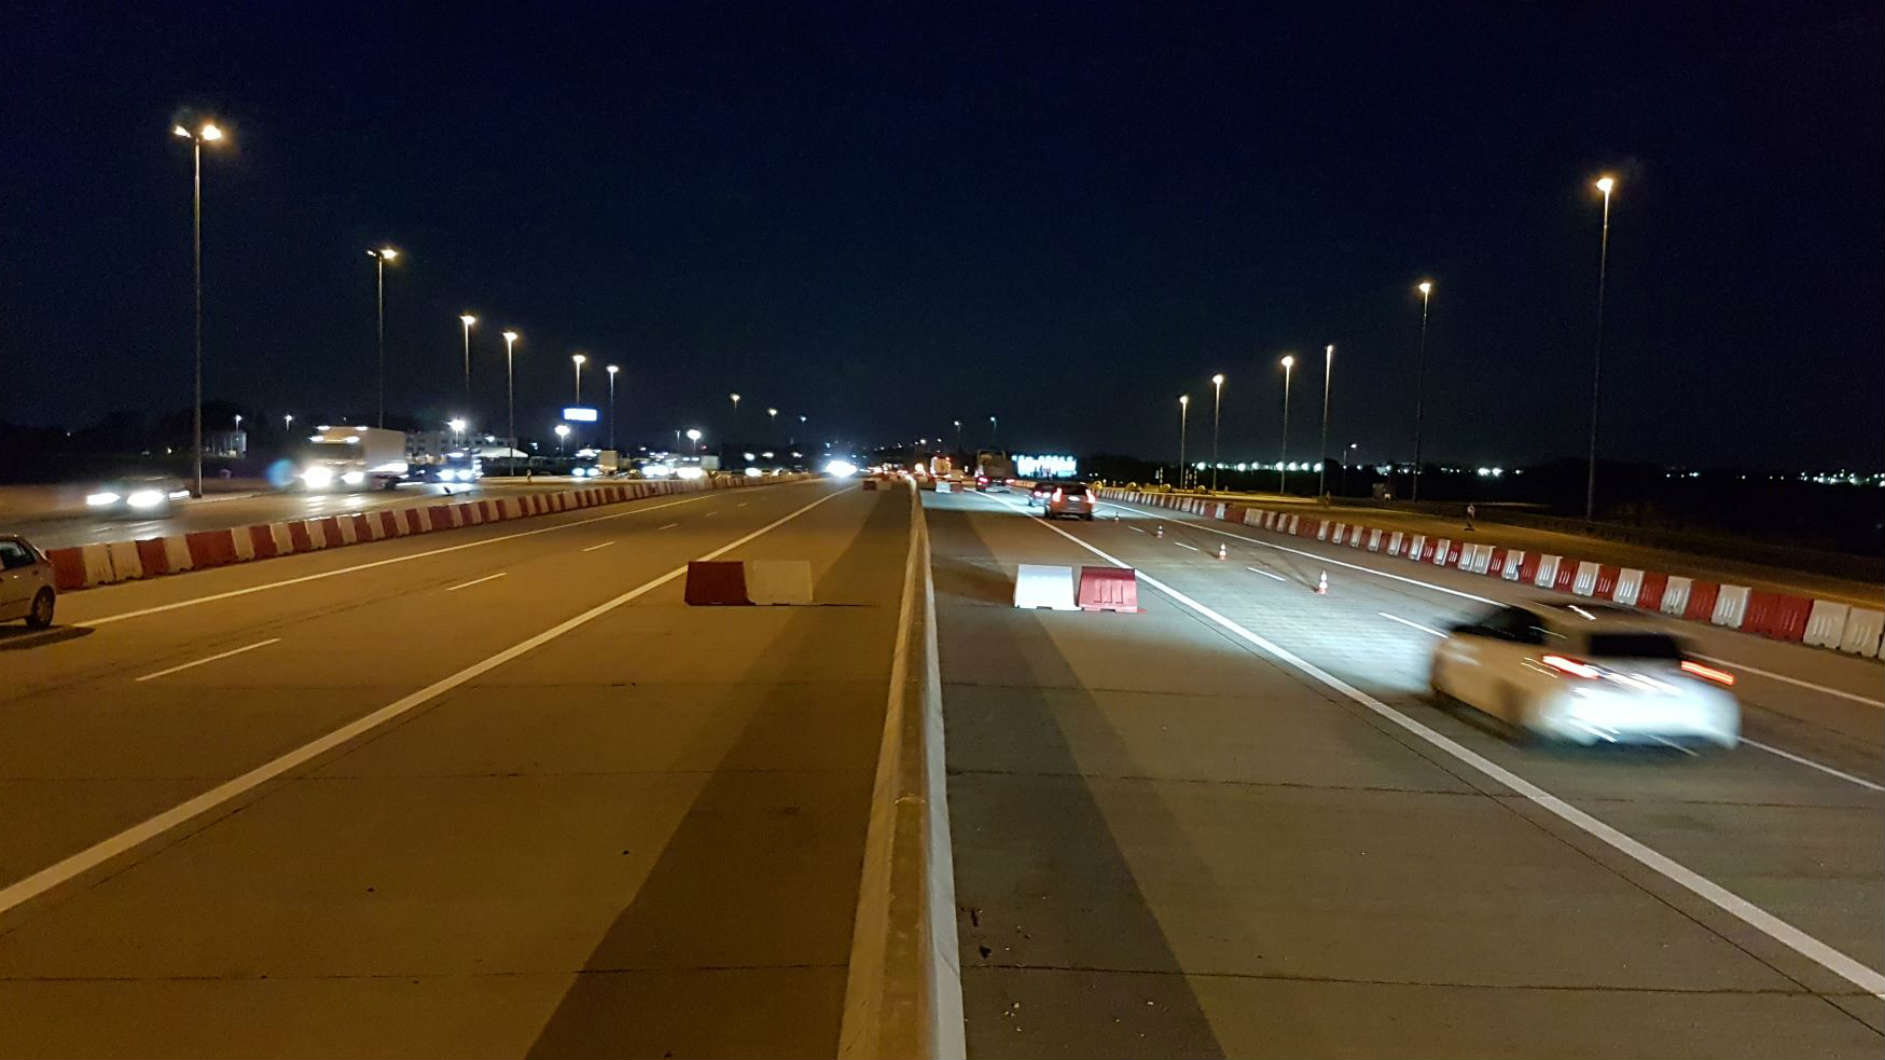 GDDKiA rozebrała niedokończony punkt poboru opłat na autostradzie A2 w okolicach Pruszkowa. Fot. GDDKiA